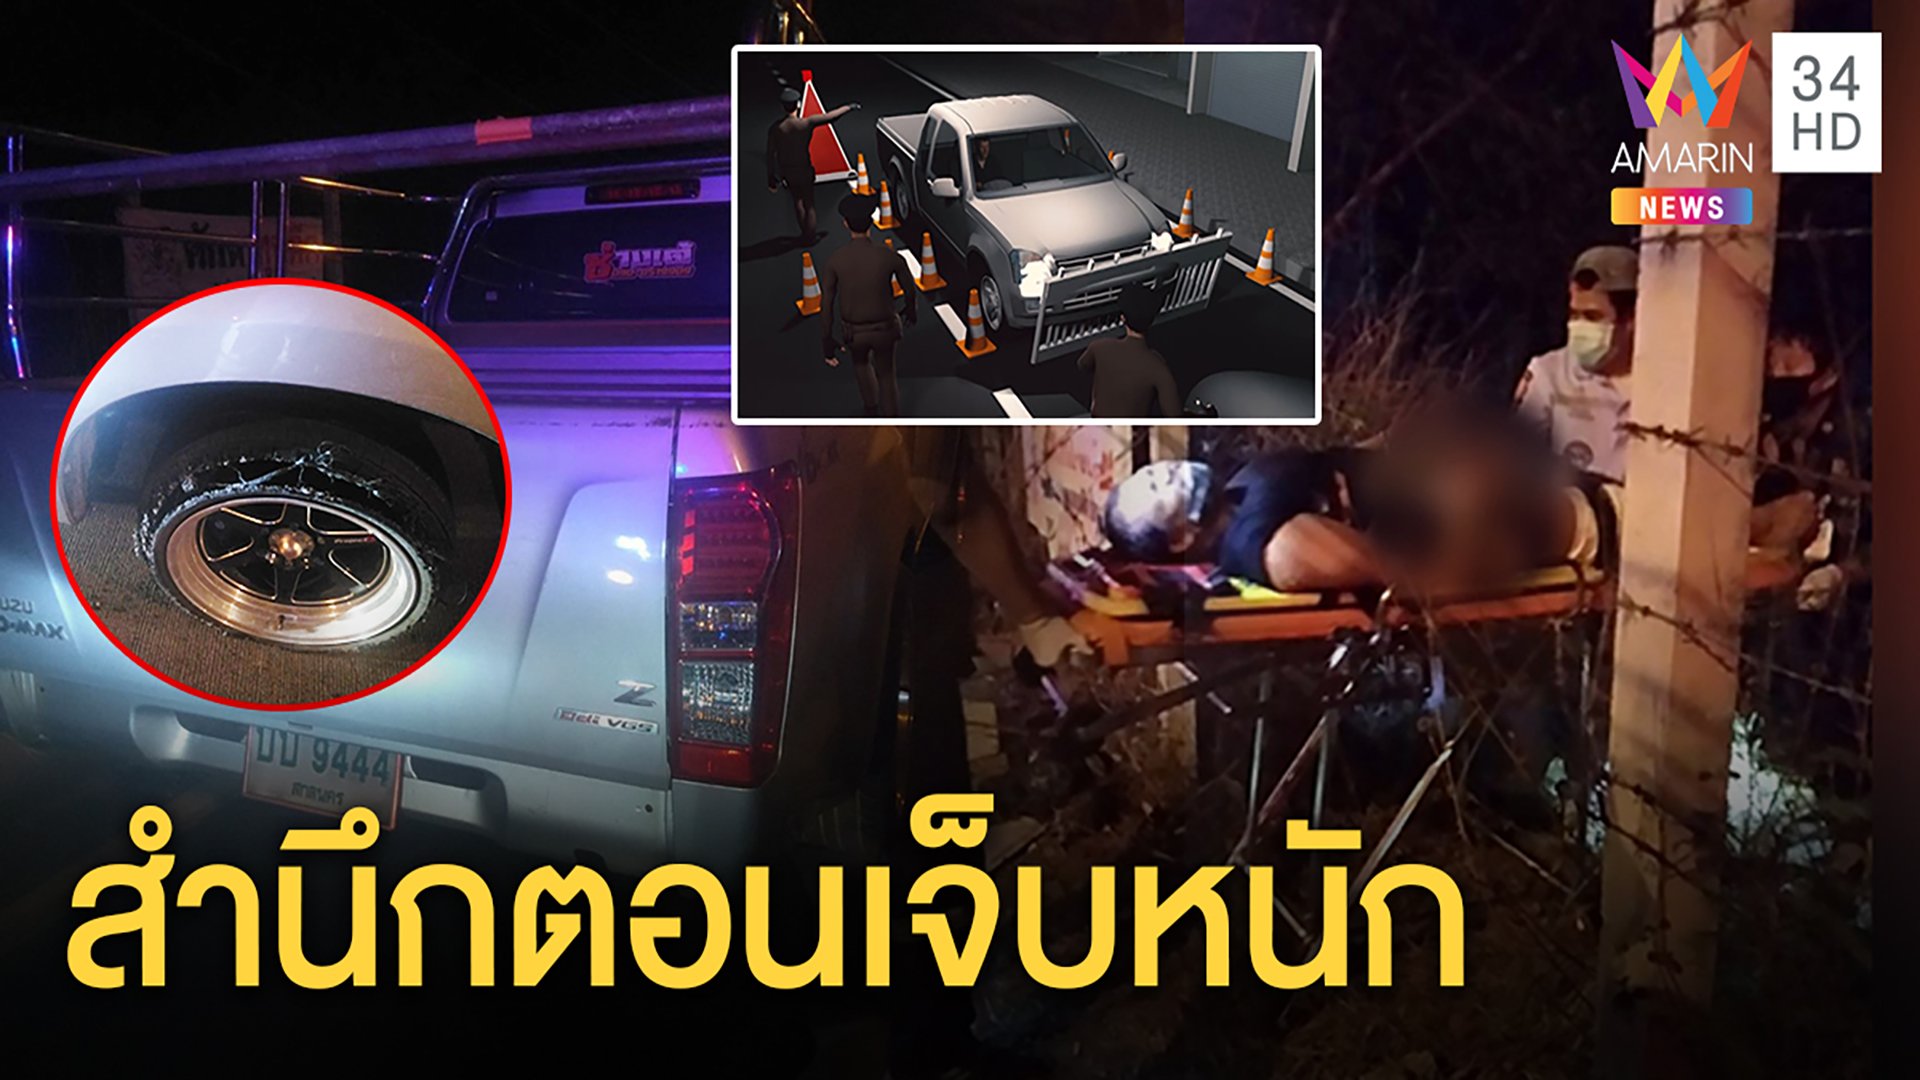 กระบะซุกยาบ้าแหกด่านเคอร์ฟิว จนมุมถูกยิงตกคู วอนกู้ภัยส่งรพ.เจ็บแผลมาก | ทุบโต๊ะข่าว | 9 เม.ย. 63 | AMARIN TVHD34